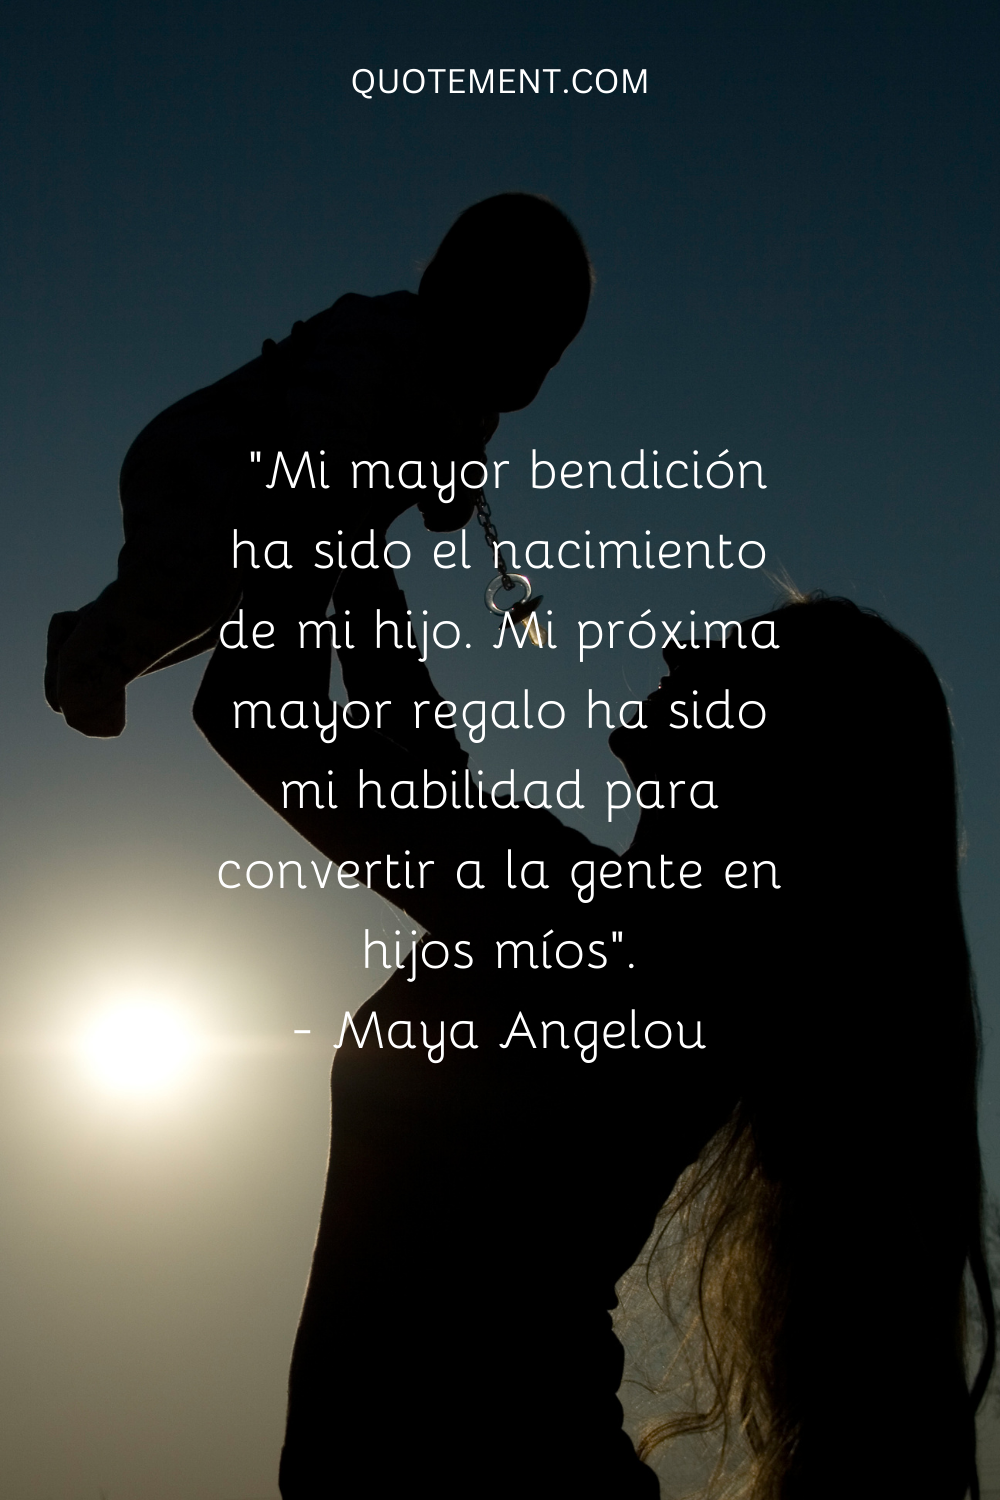 "Mi mayor bendición ha sido el nacimiento de mi Hijo. Mi siguiente mayor regalo ha sido mi capacidad de convertir a la gente en hijos míos". - Maya Angelou